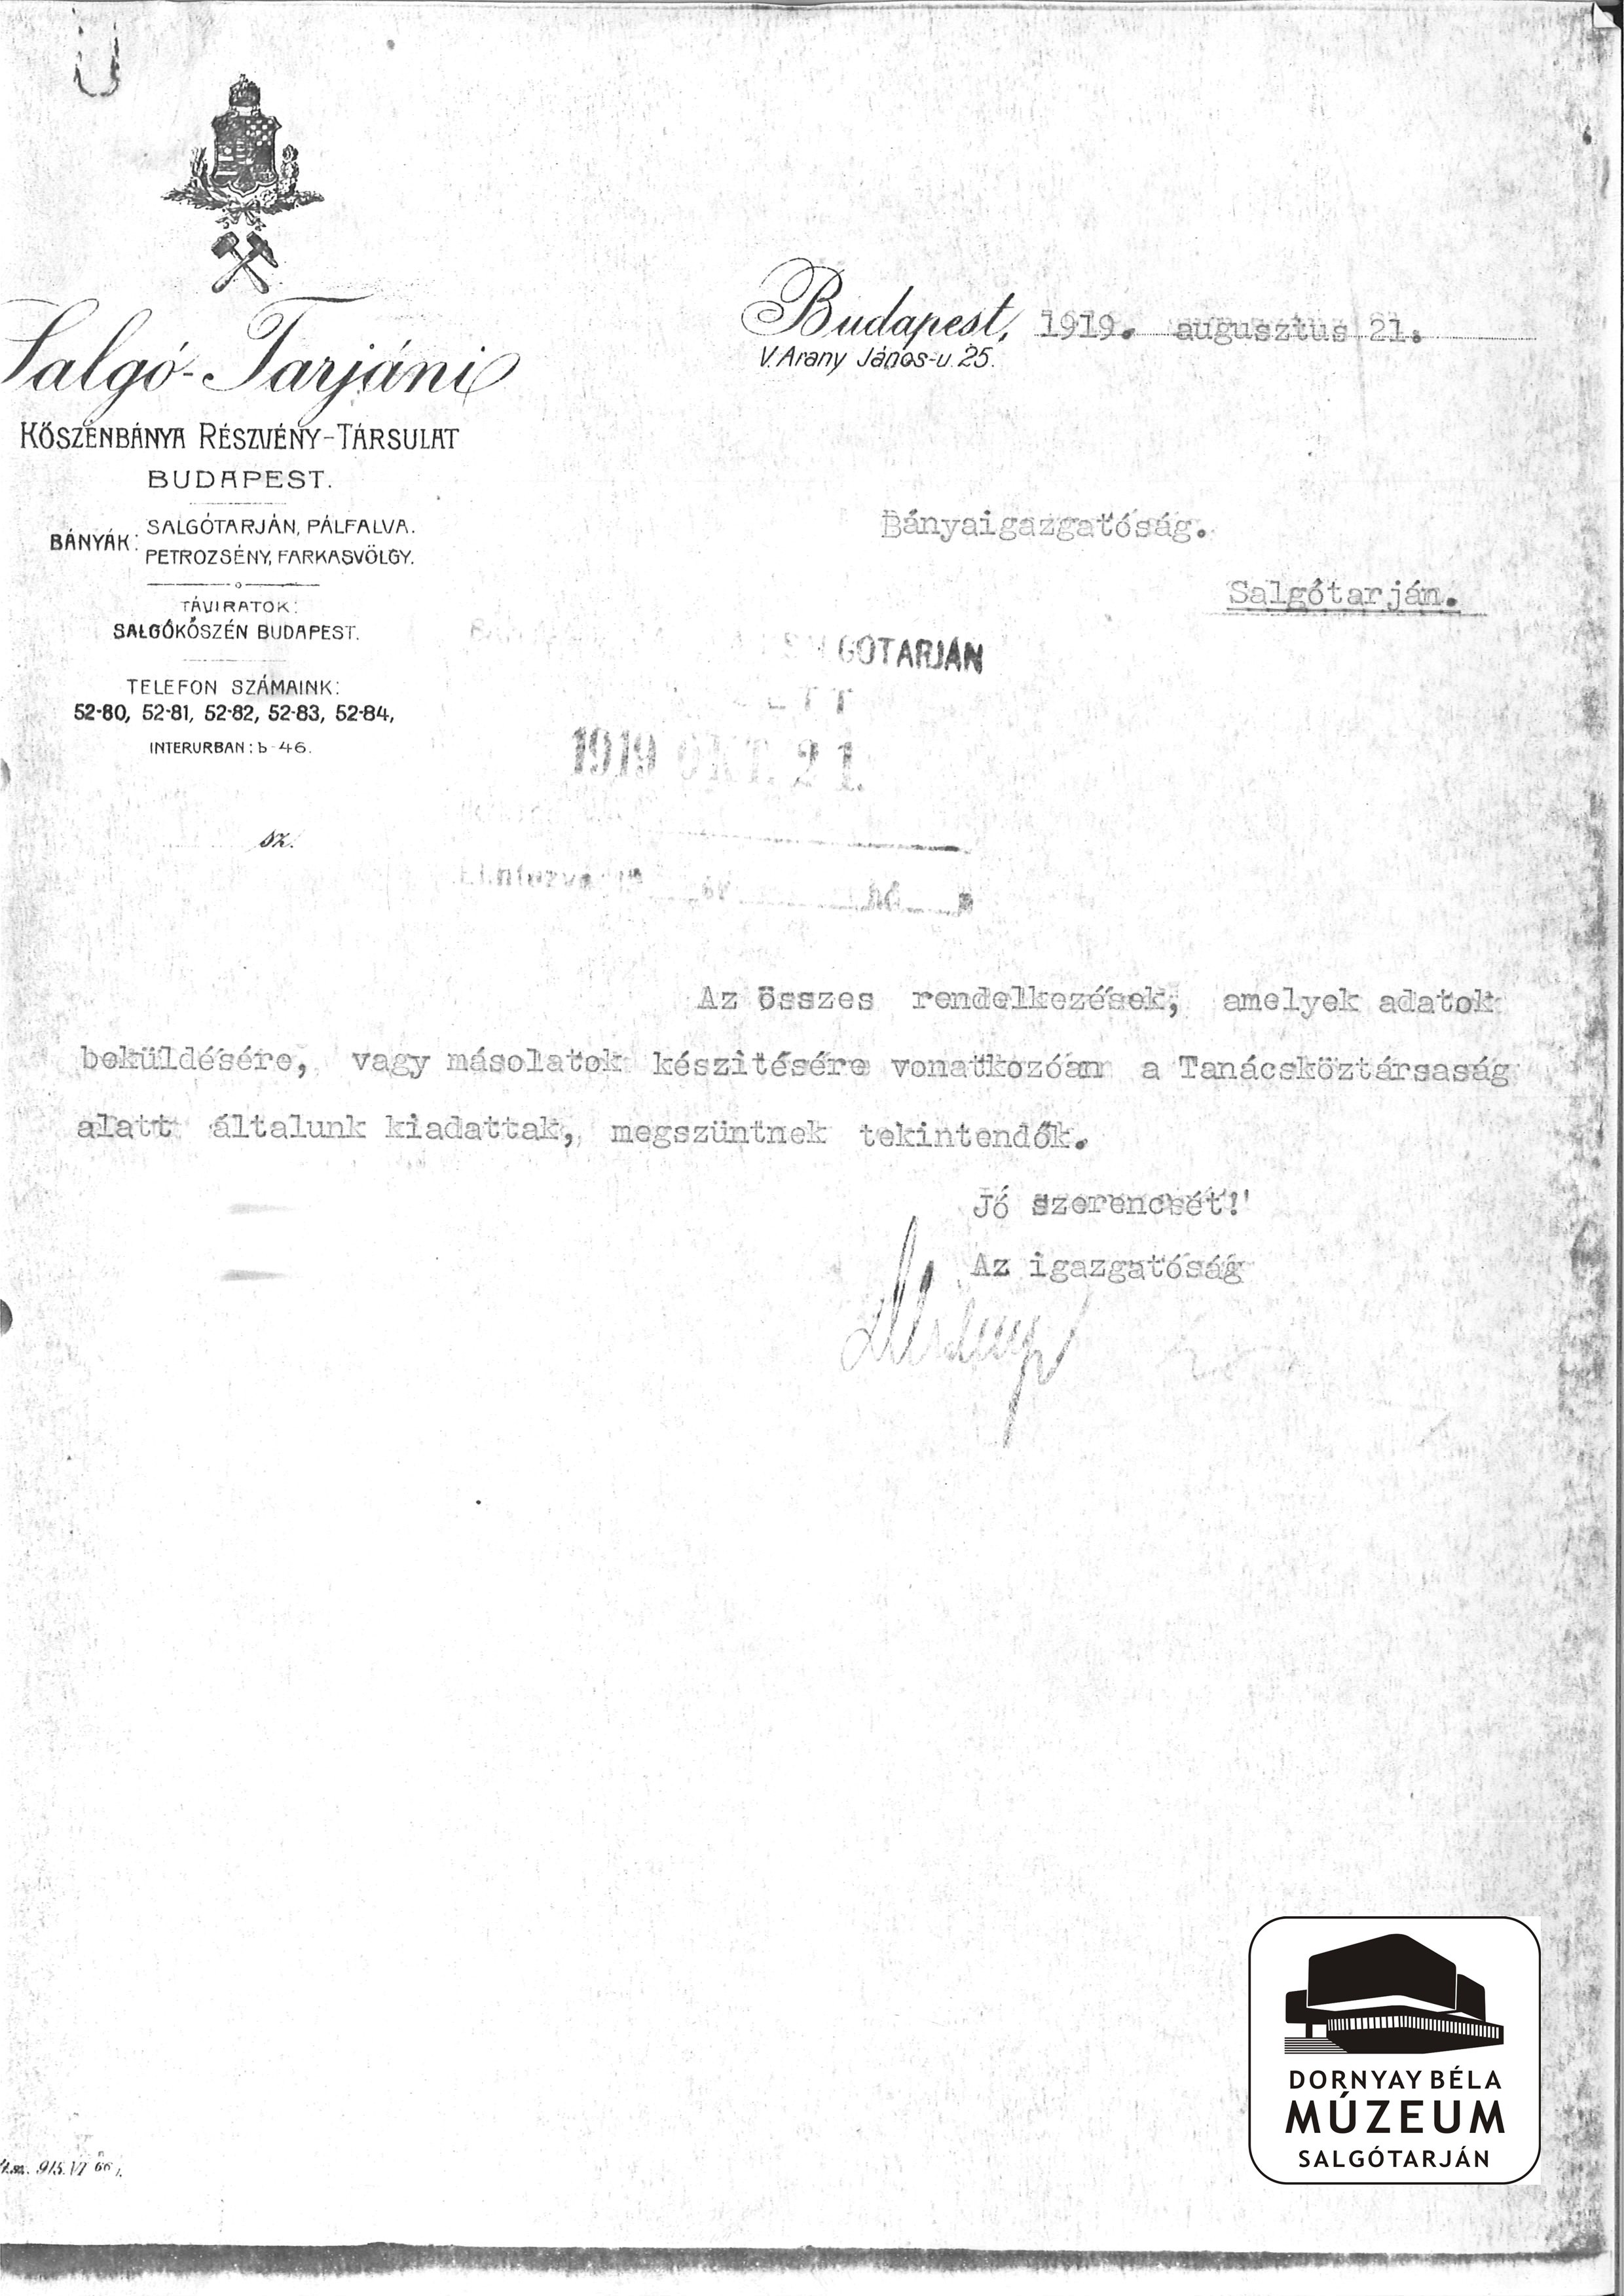 SKB. Rt. Az igazgatóság rendelkezései, melyek a beküldésre vonatkoznak érvénytelenek (Dornyay Béla Múzeum, Salgótarján CC BY-NC-SA)